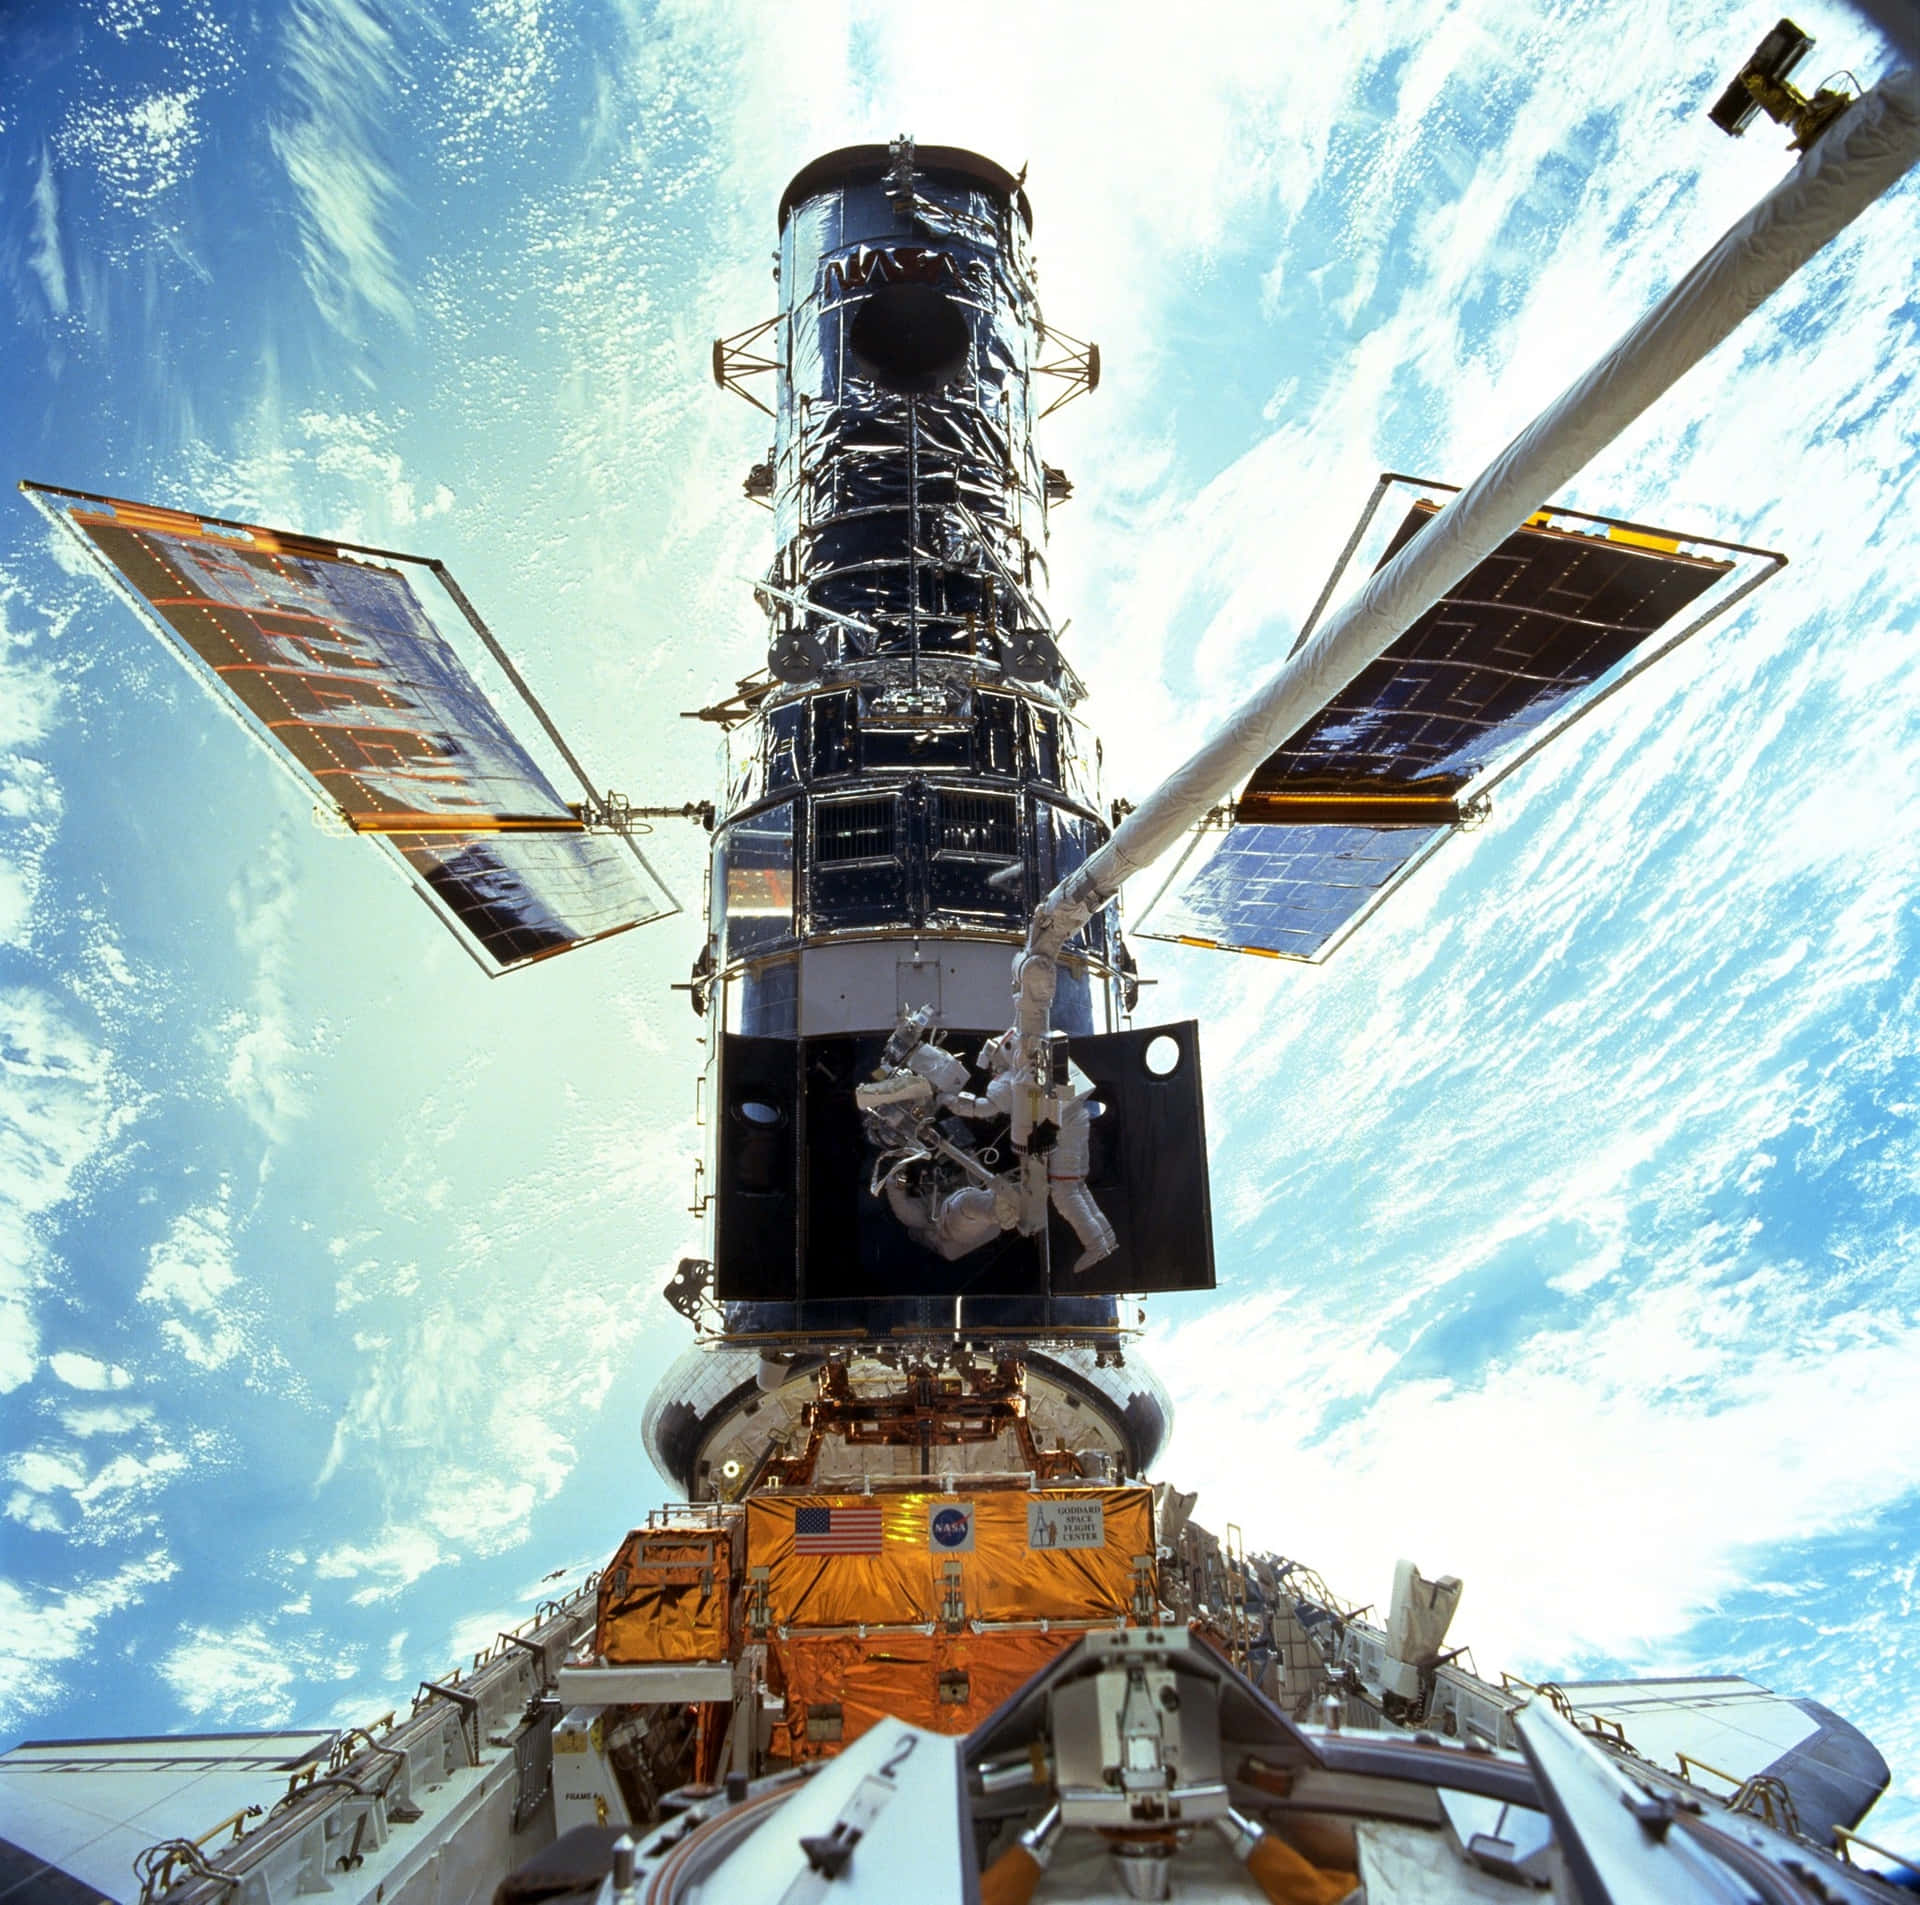 Imágenesdel Hubble En Reparación Y Mantenimiento En El Espacio.